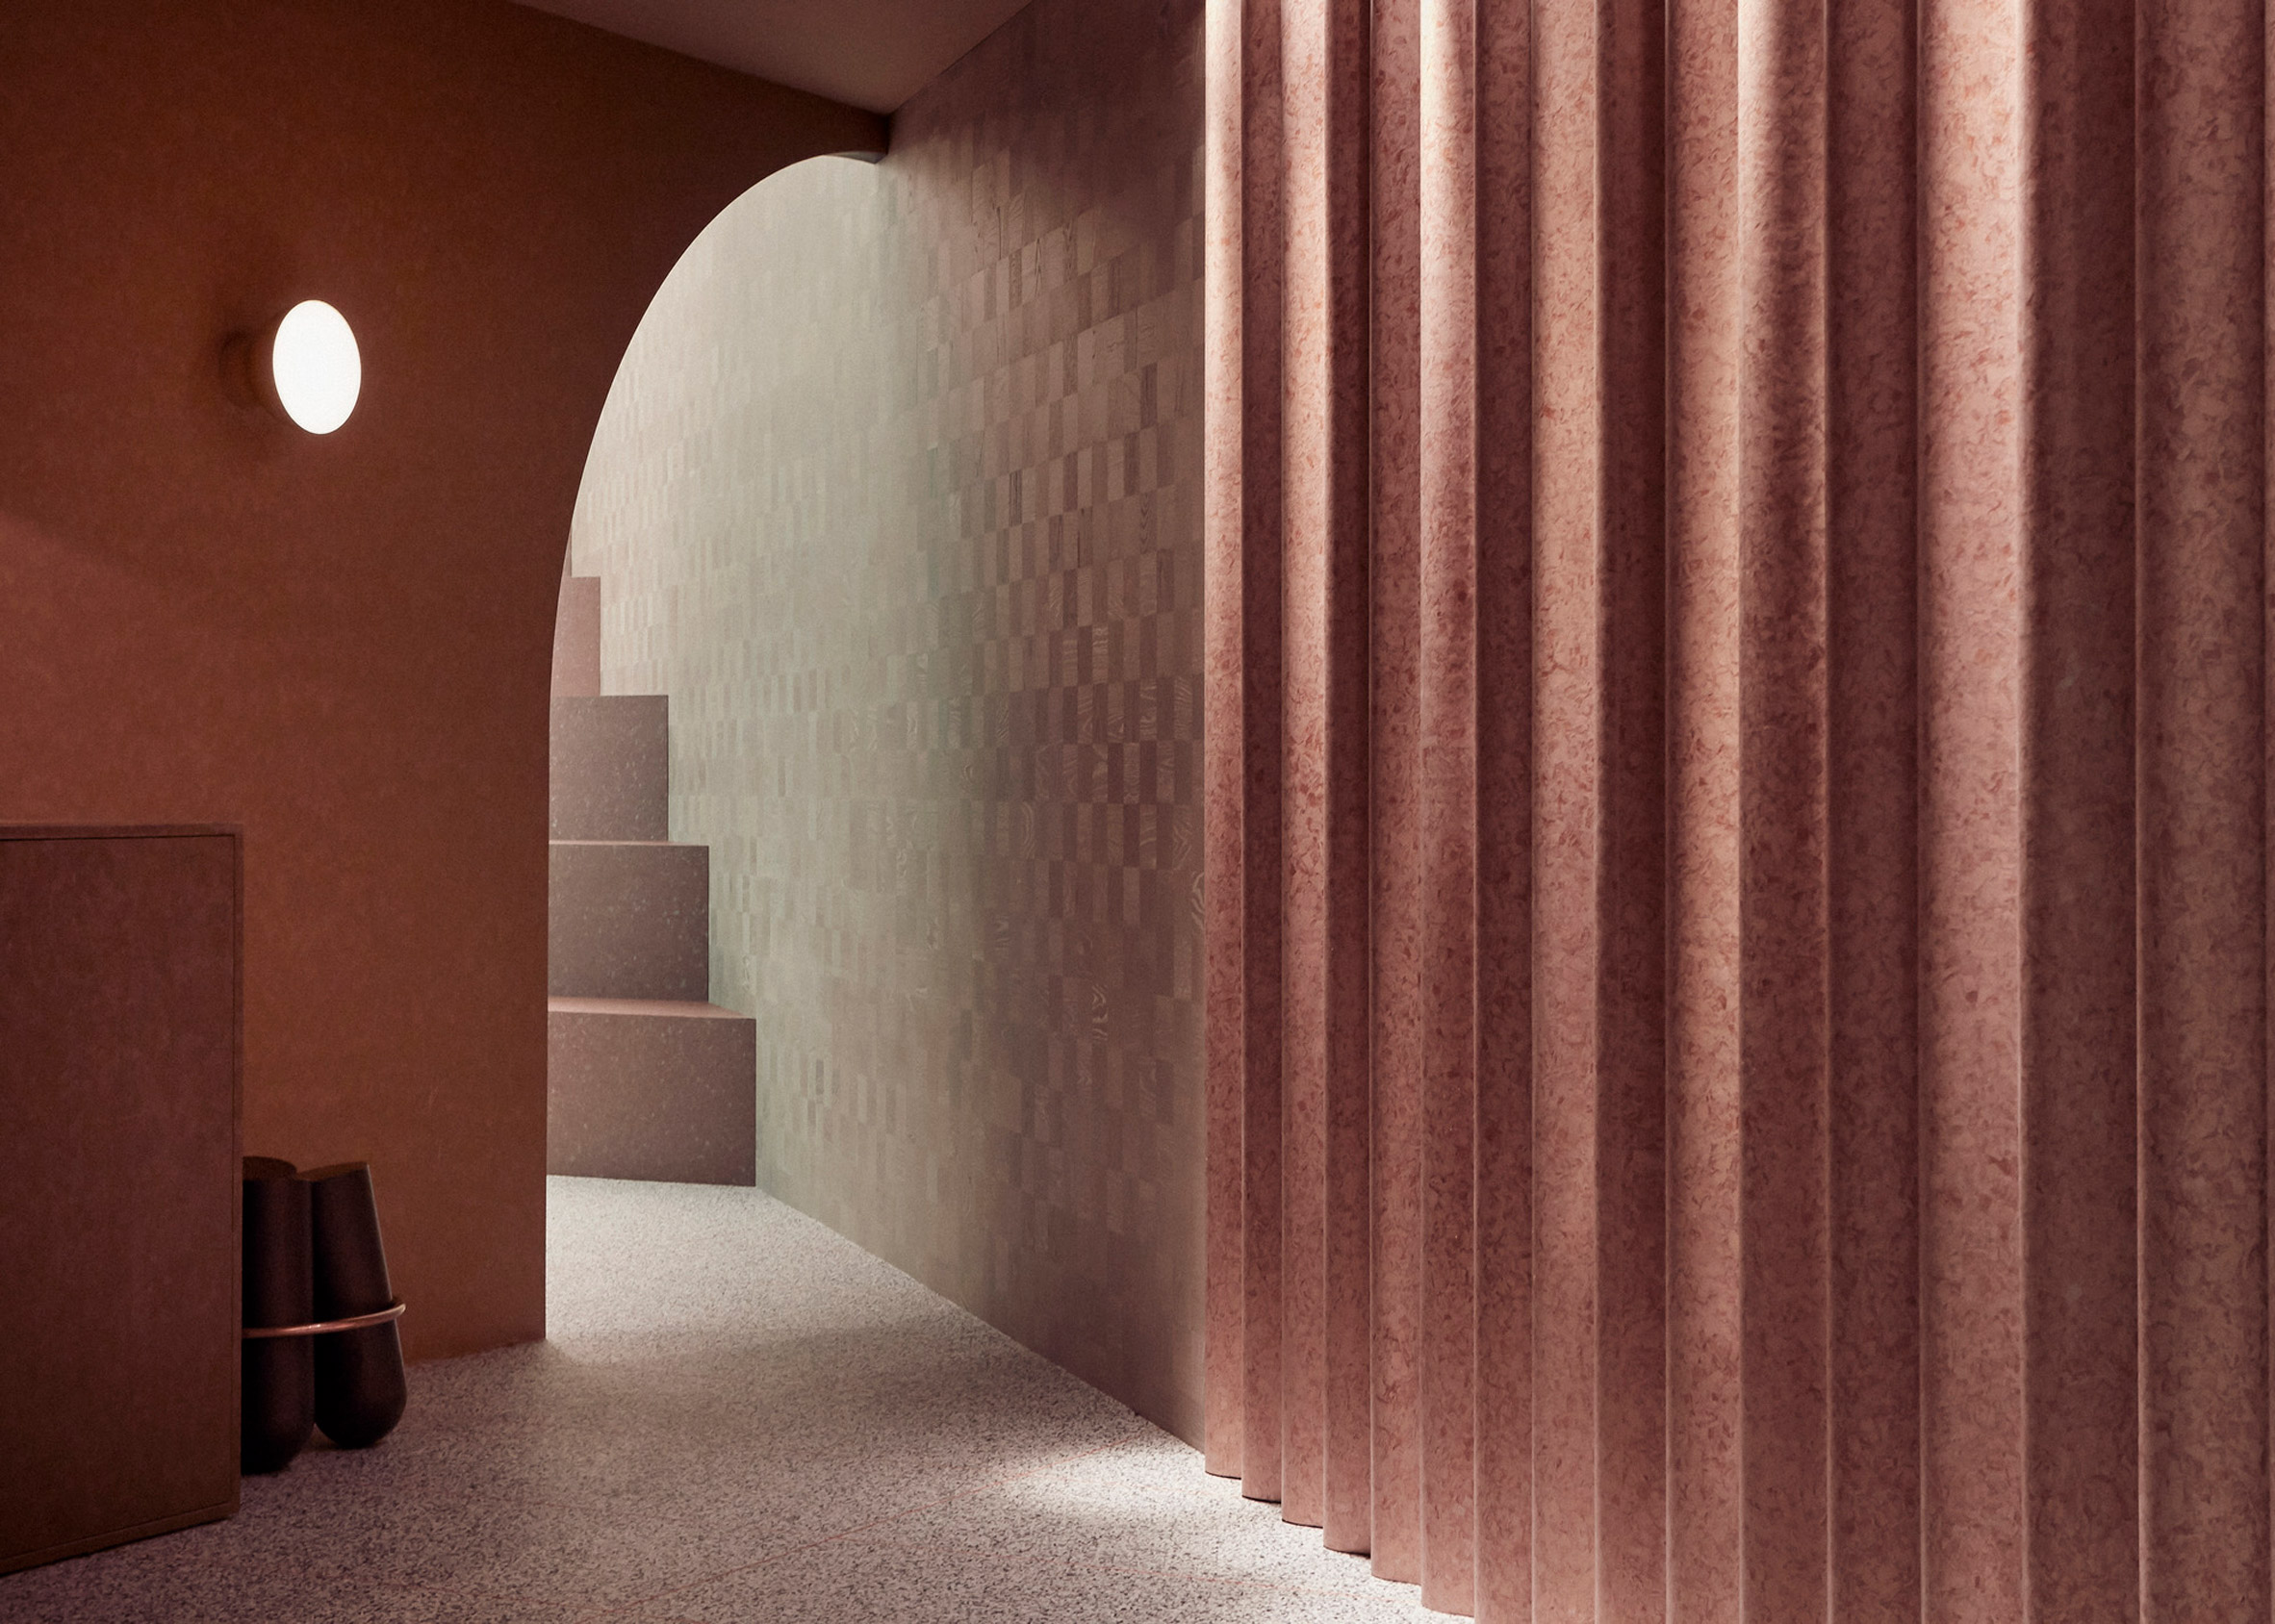 Dezeen Awards interiors winners: The Lookout by Note Design Studio